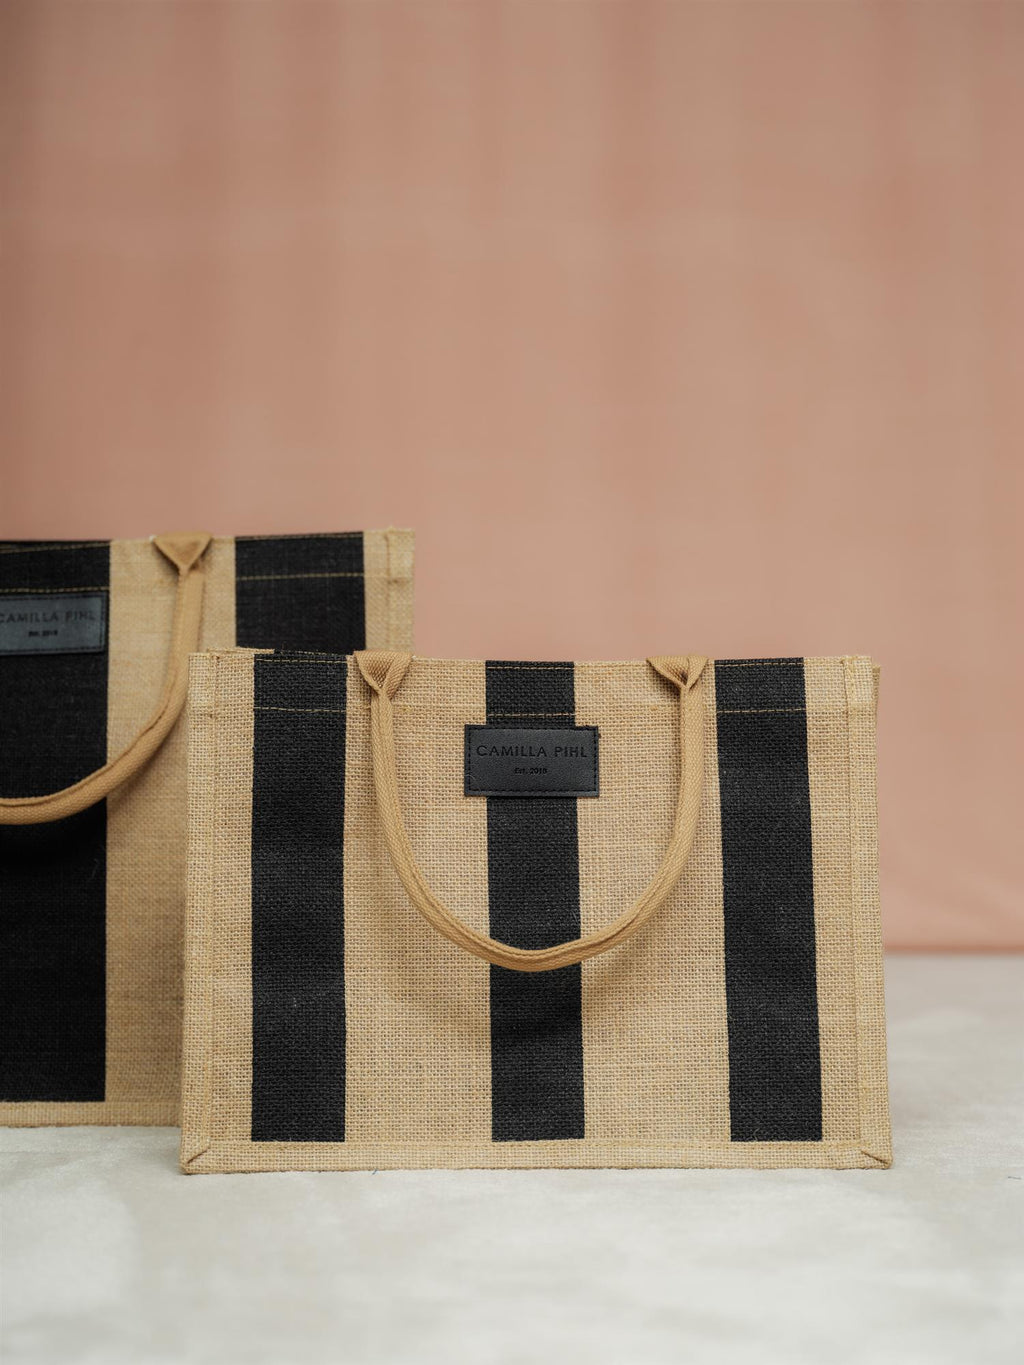 Camilla Pihl Market Bag Small.Black/Stripe